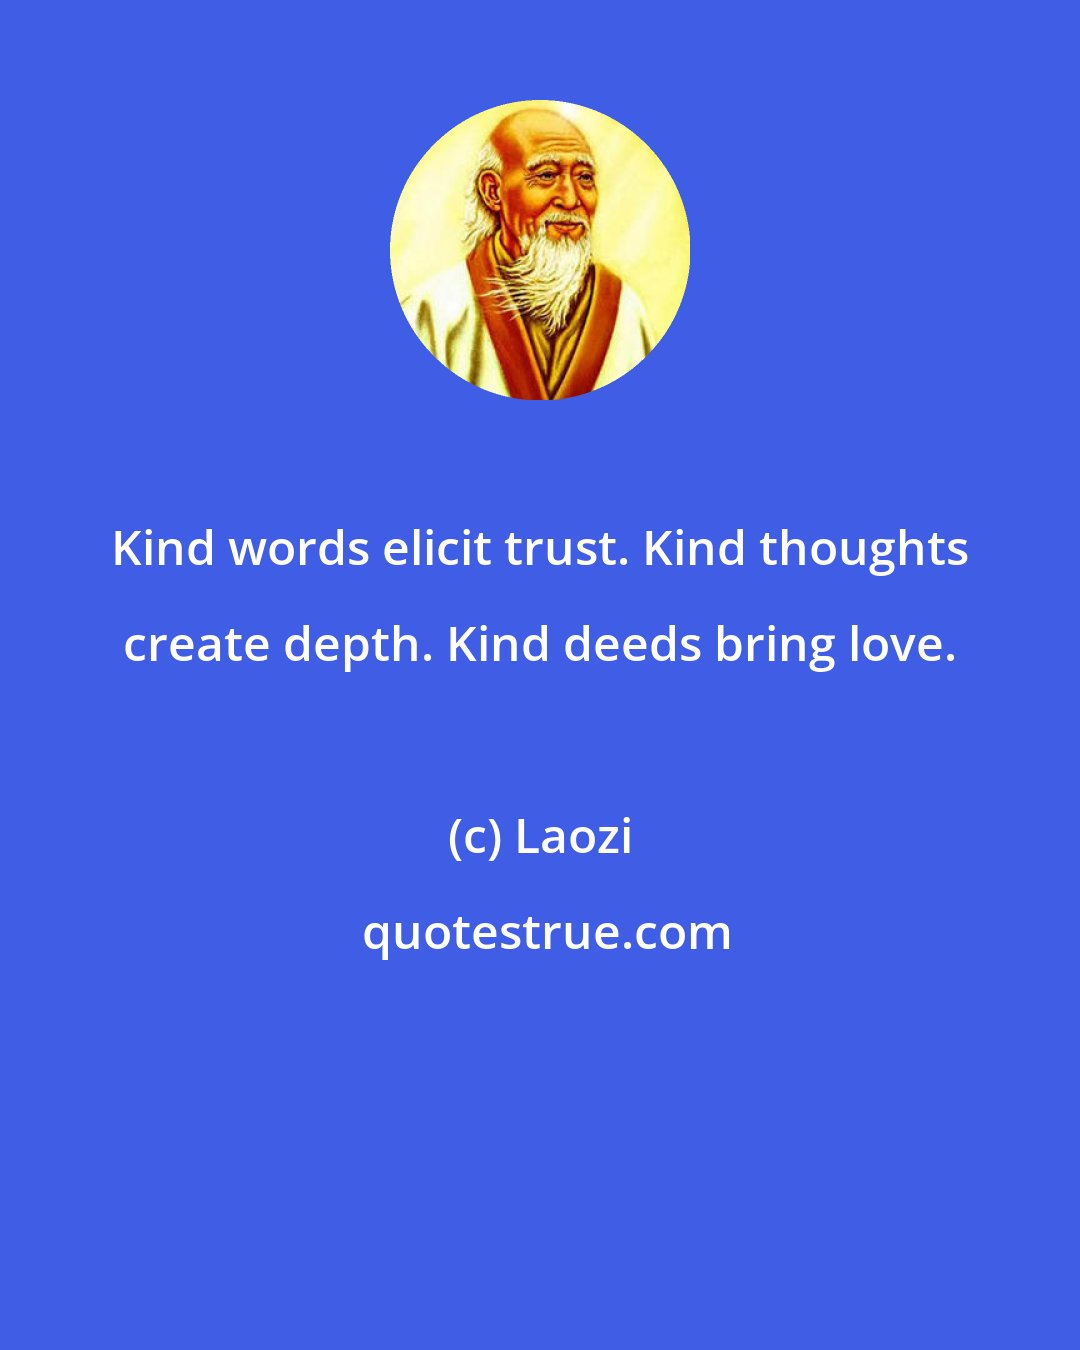 Laozi: Kind words elicit trust. Kind thoughts create depth. Kind deeds bring love.